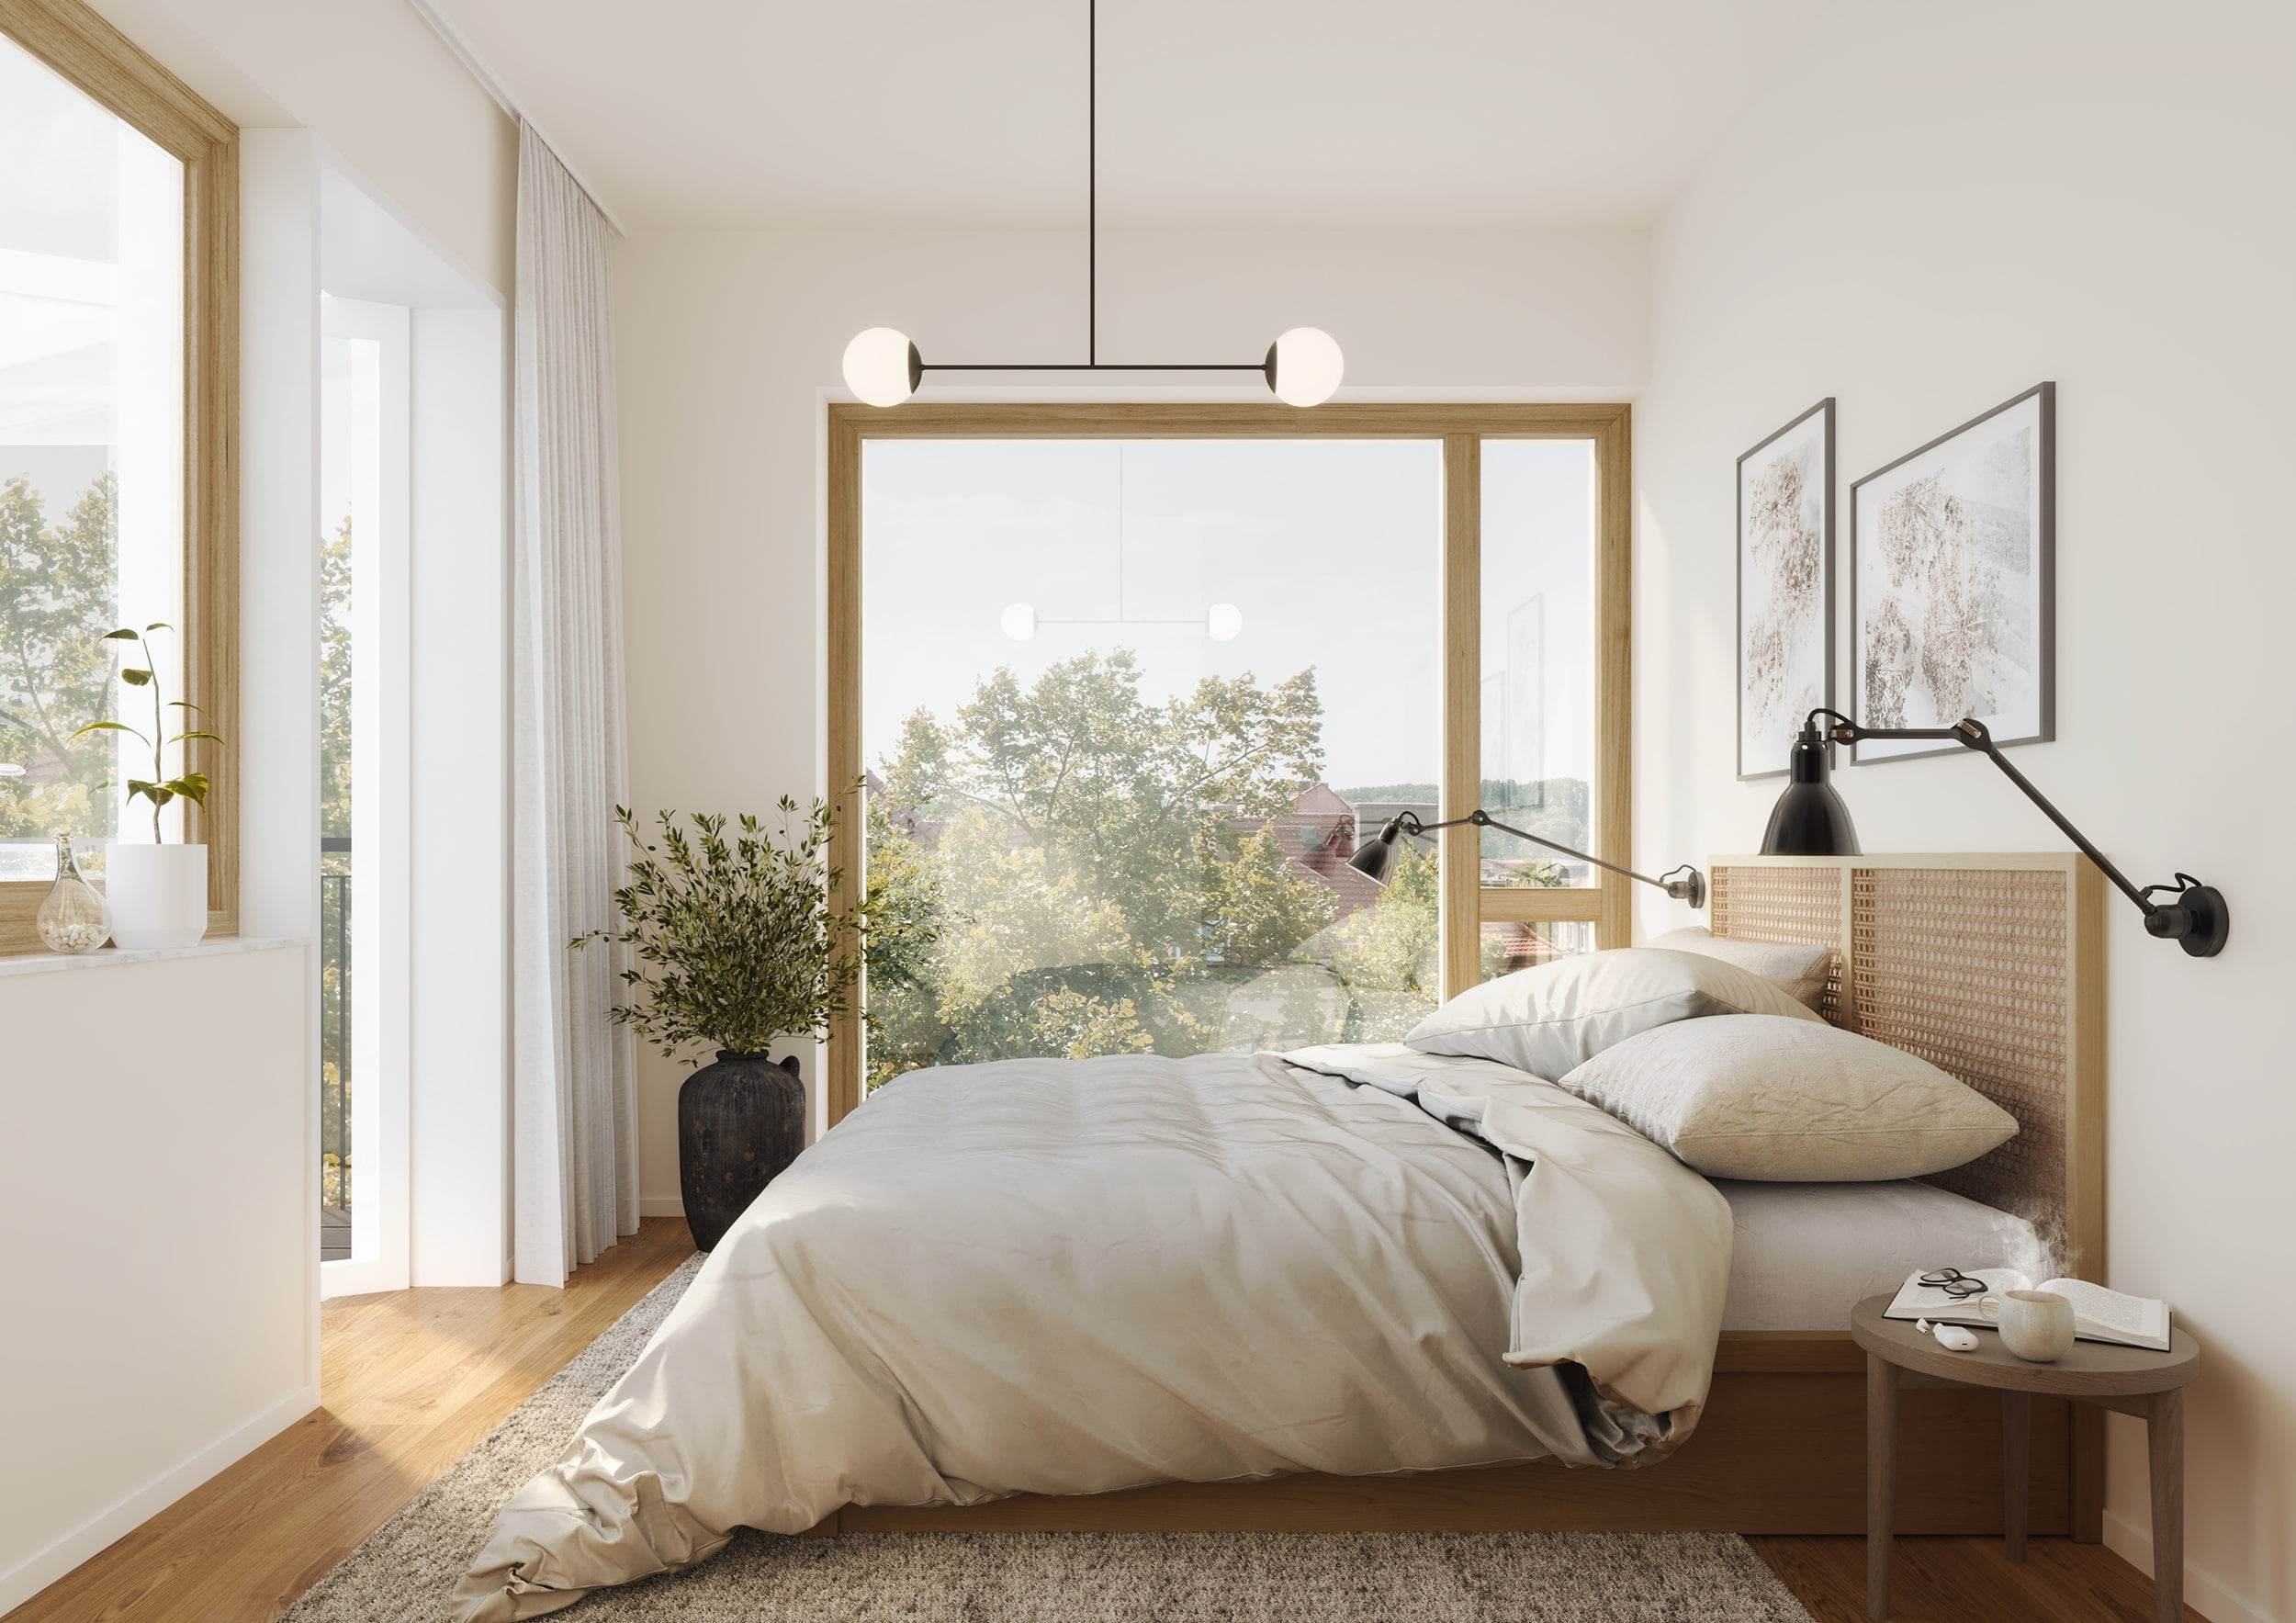 Interiör visualisering av sovrum ifrån lägenhet i Sickla